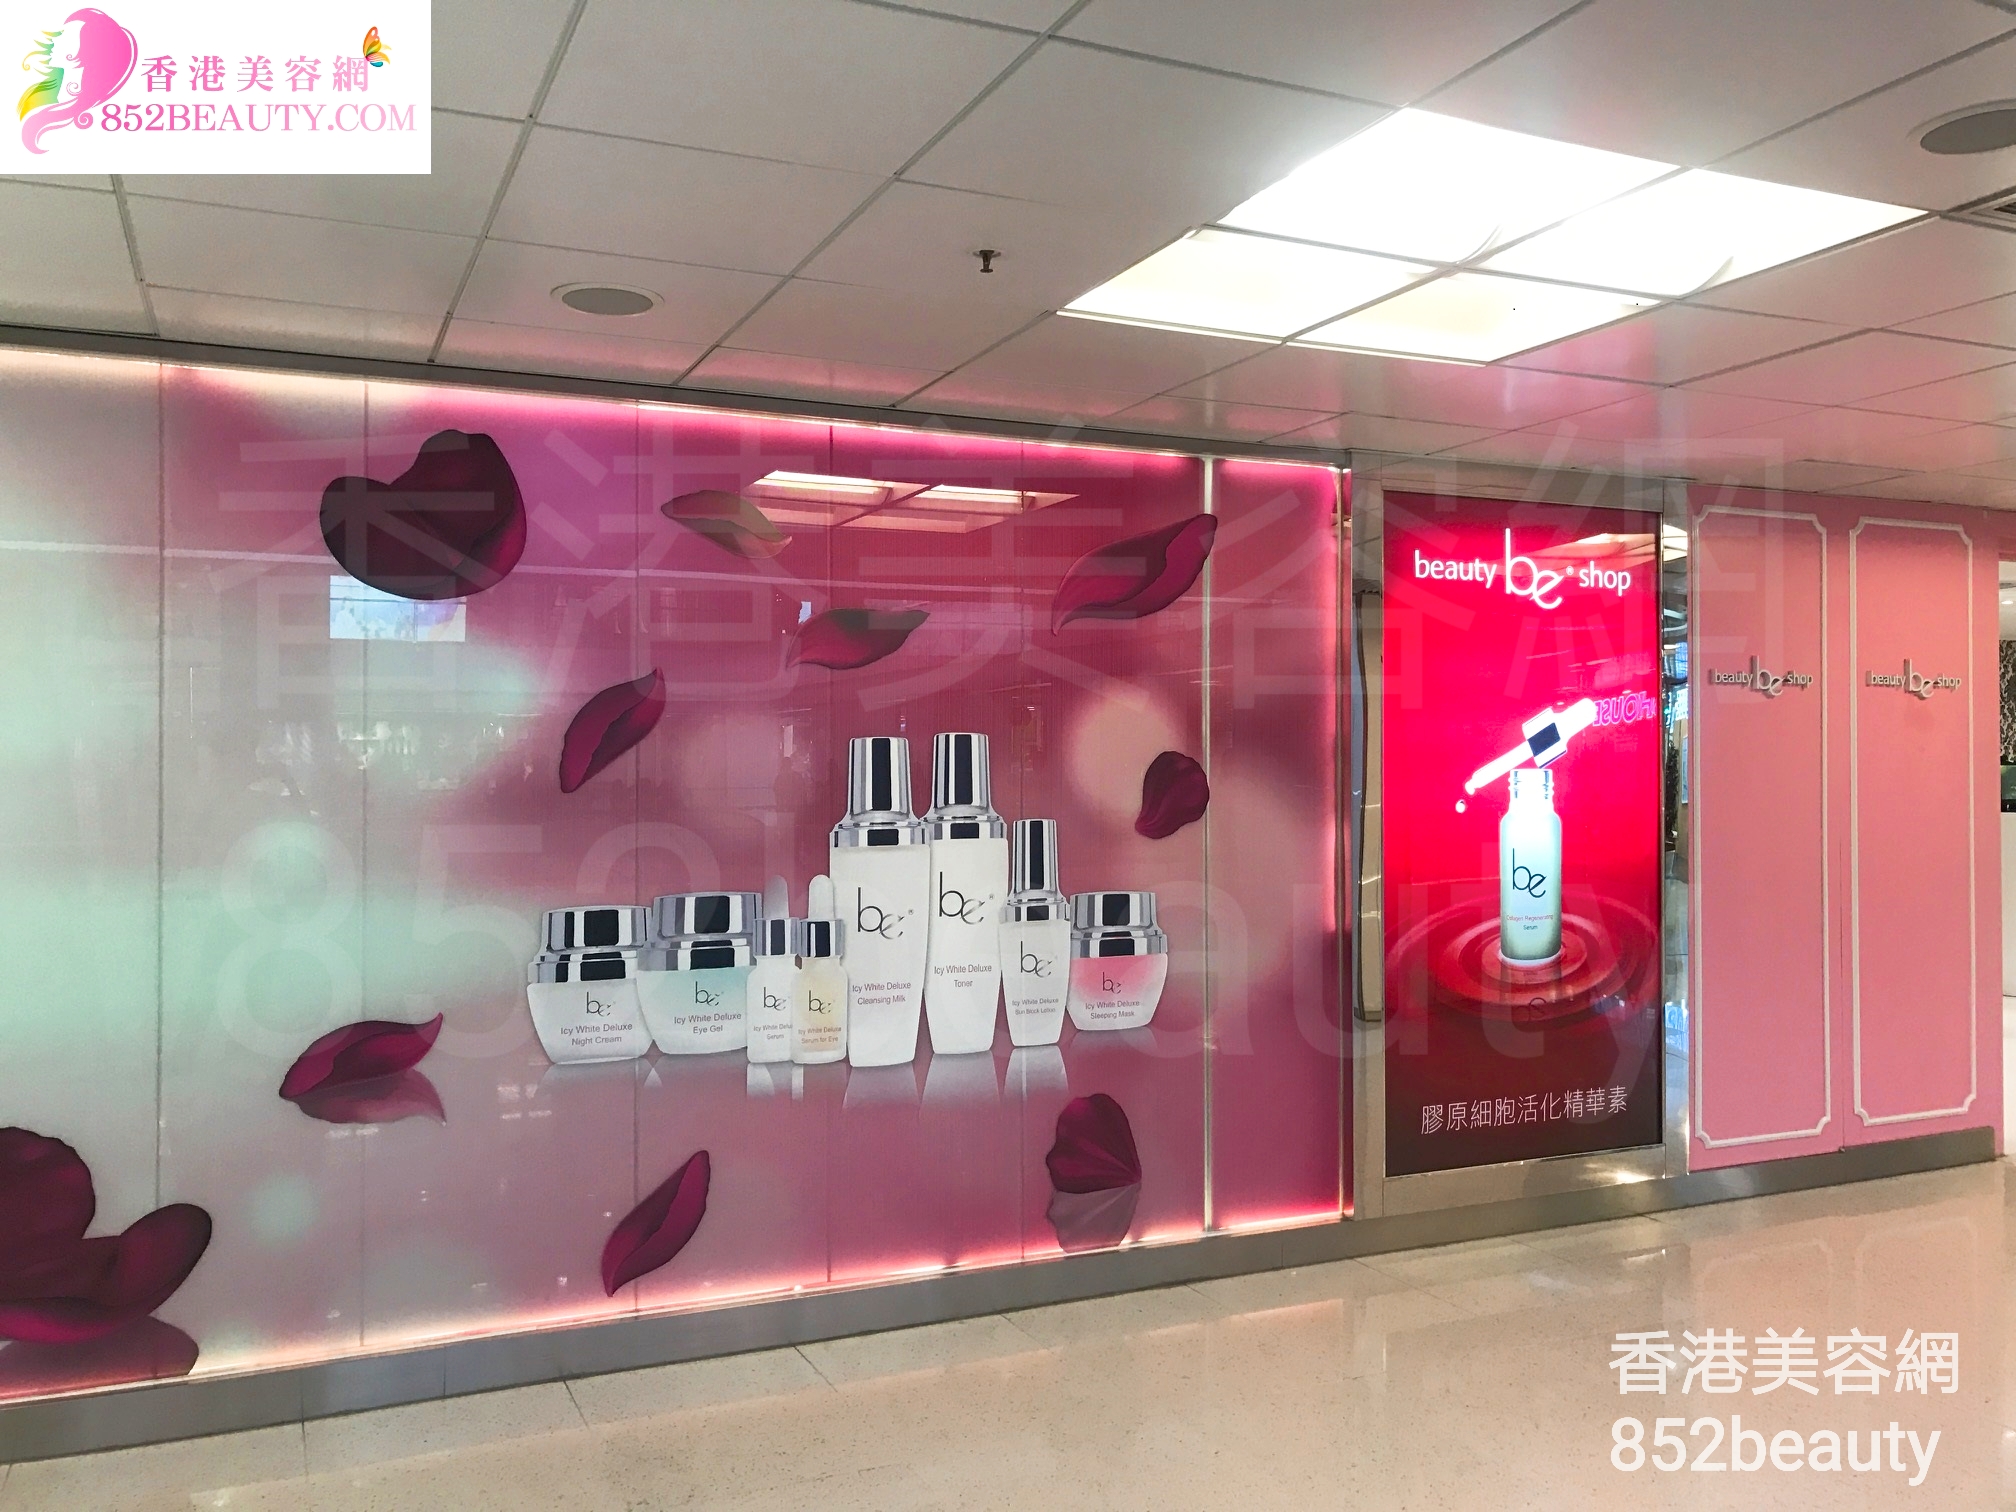 纤体瘦身: be beauty shop (大埔廣場)